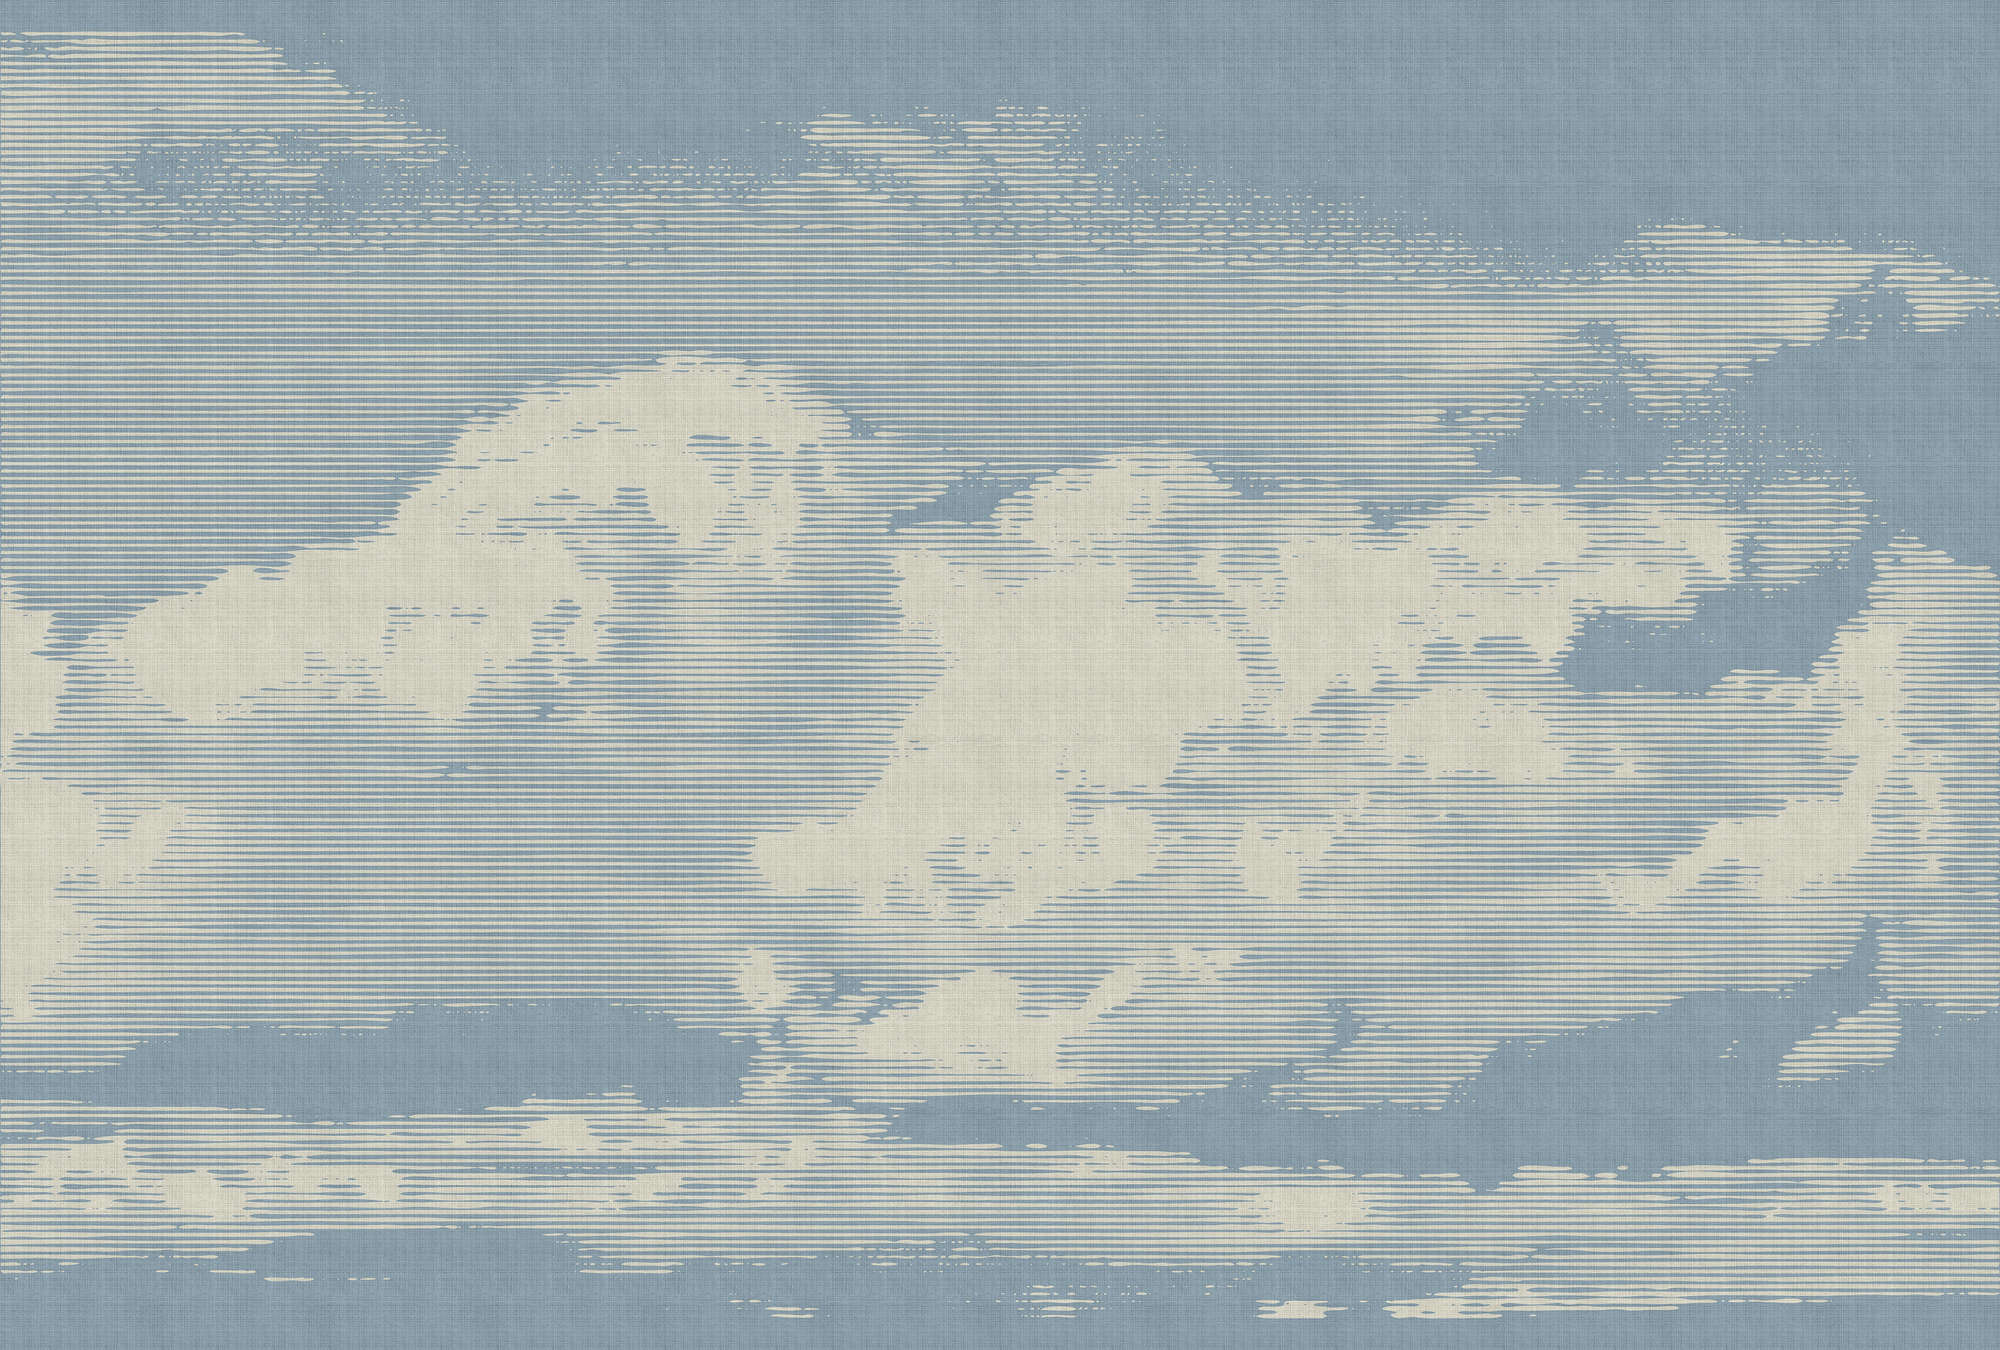             Nubes 1 - Papel pintado con motivo de nubes en estructura de lino natural - Beige, Azul | Perla liso no tejido
        